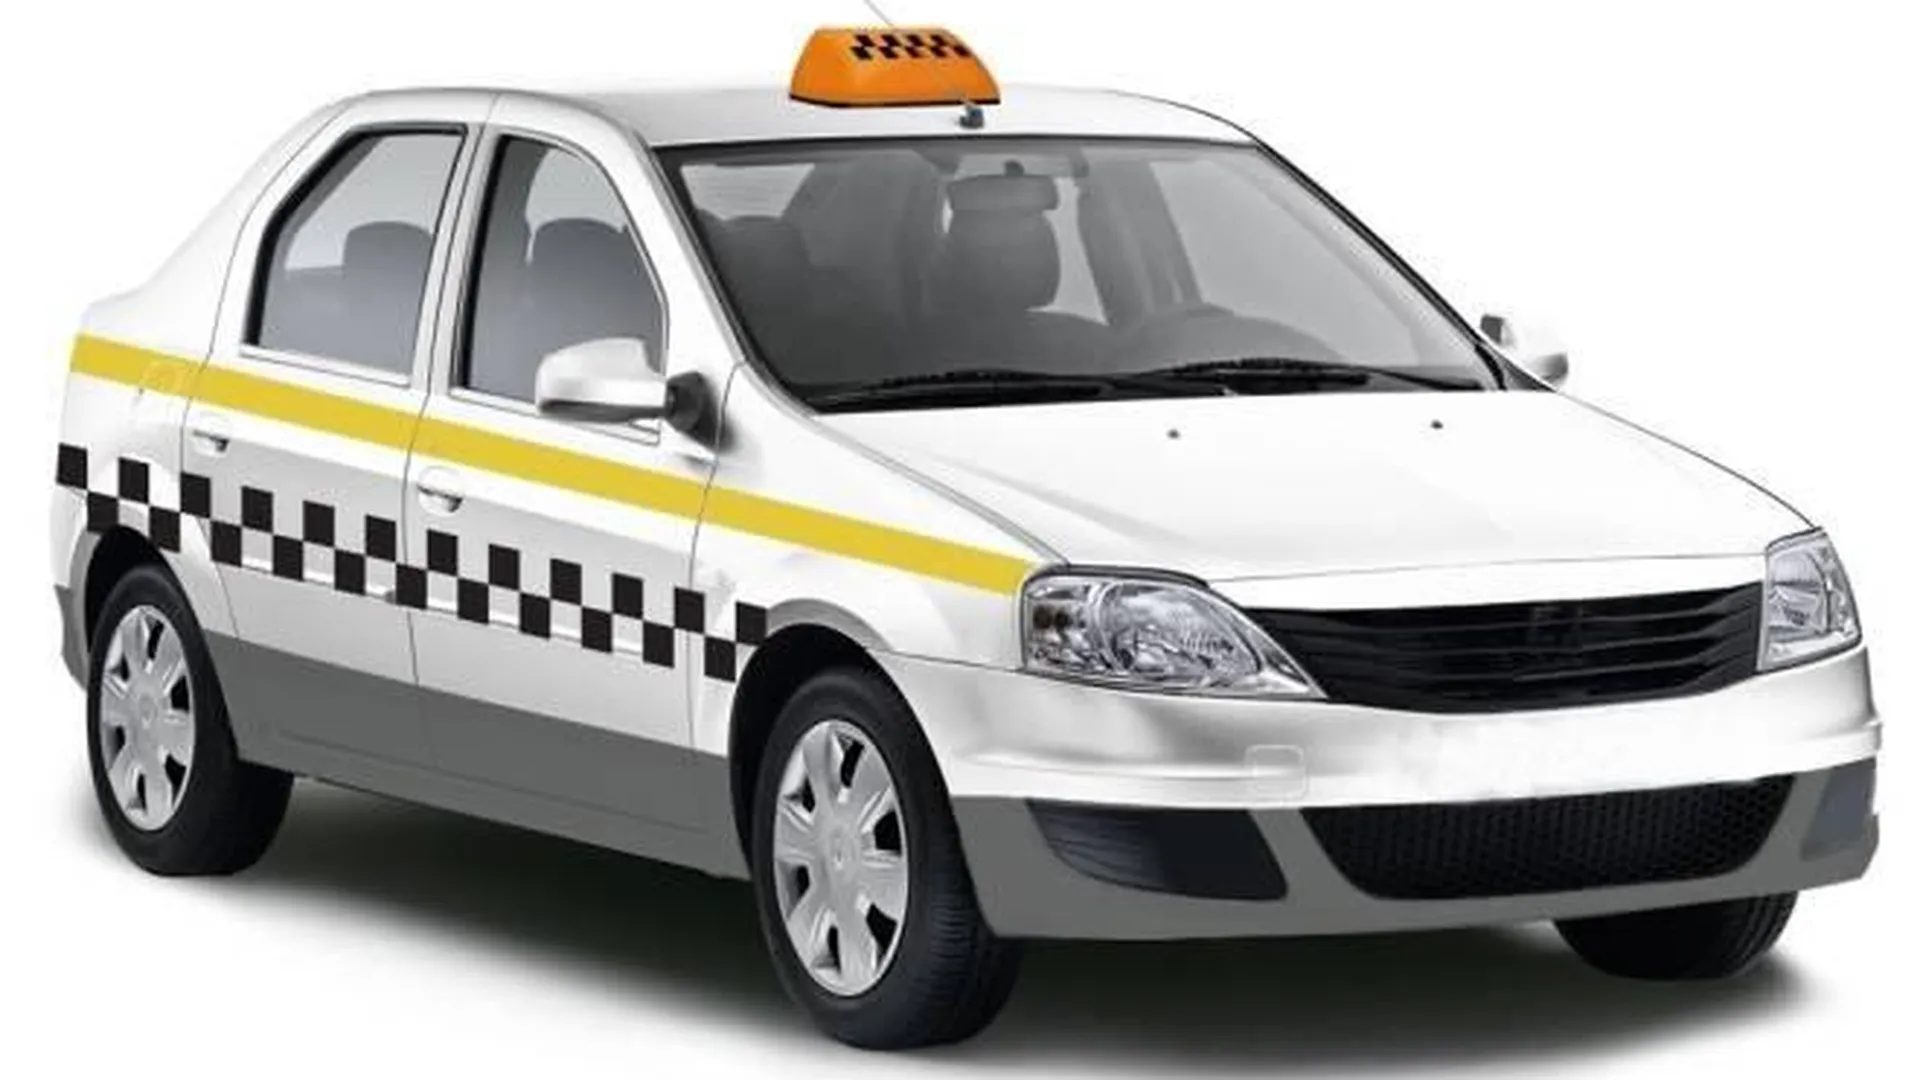 Около 100 машин такси в Подмосковье уже перешли на единую цветовую гамму